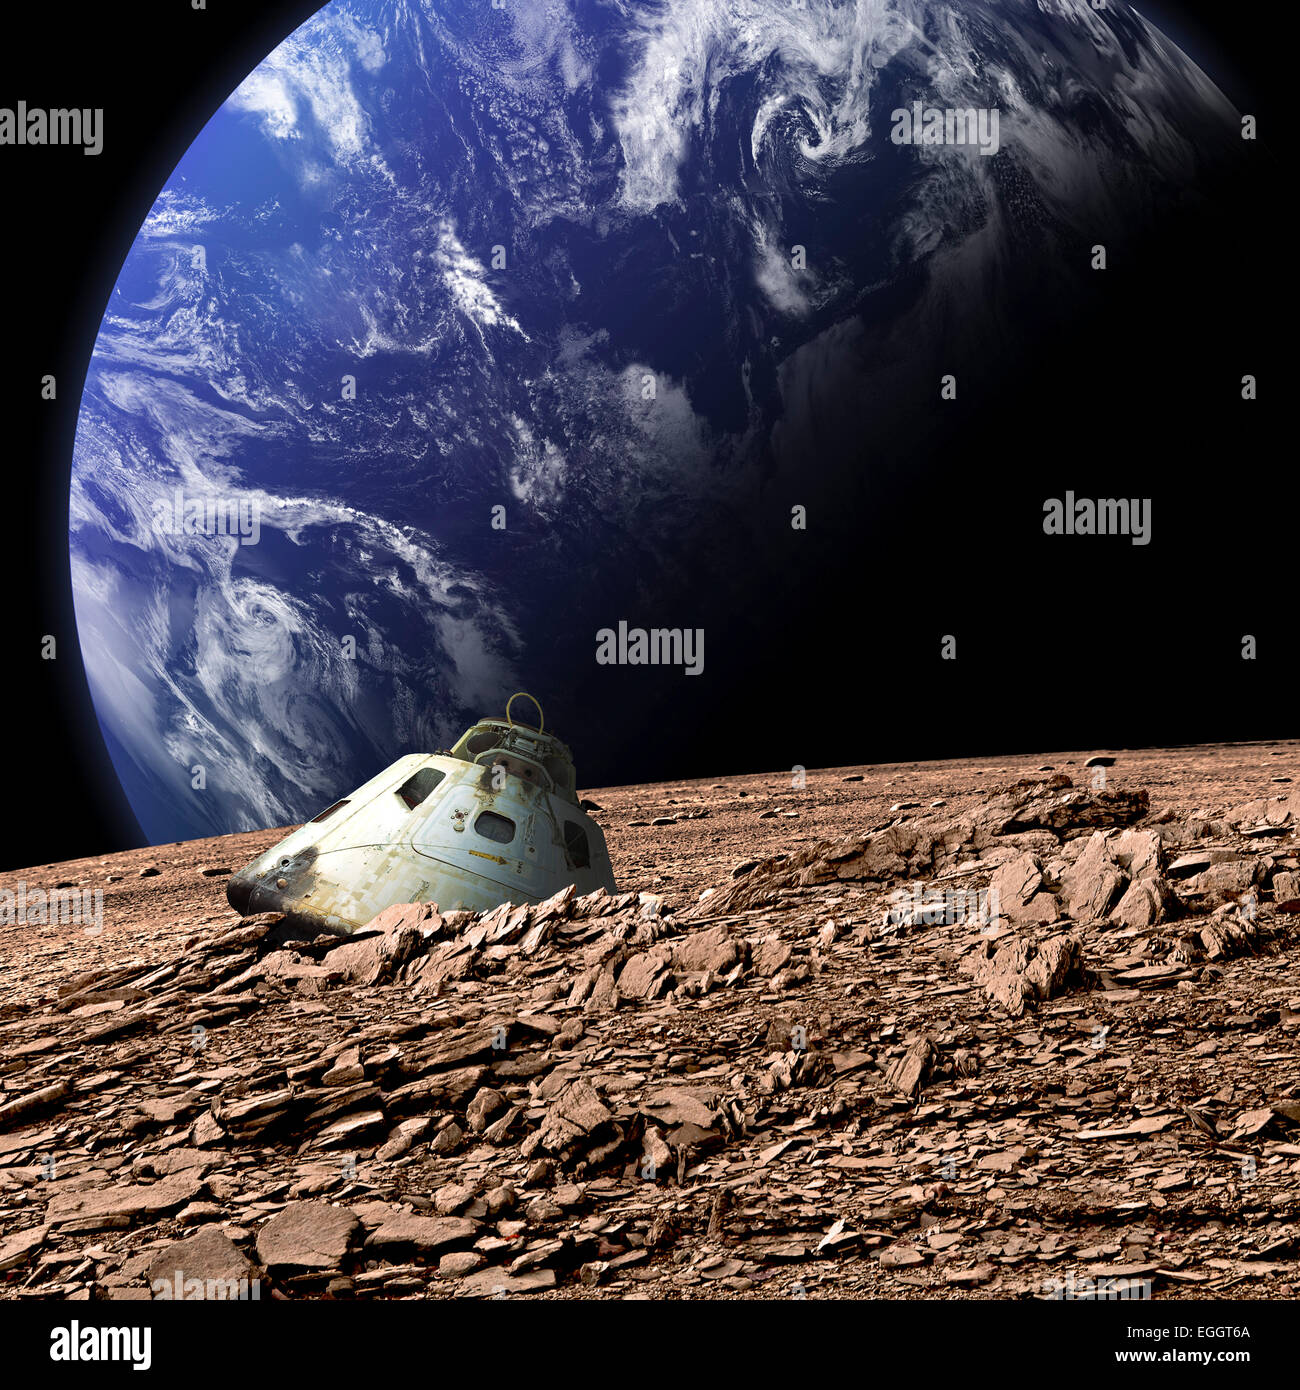 Un scorched capsula spaziale giace abbandonata su una sterile luna. Una massa-come pianeta coperte in acqua sorge in background. Foto Stock